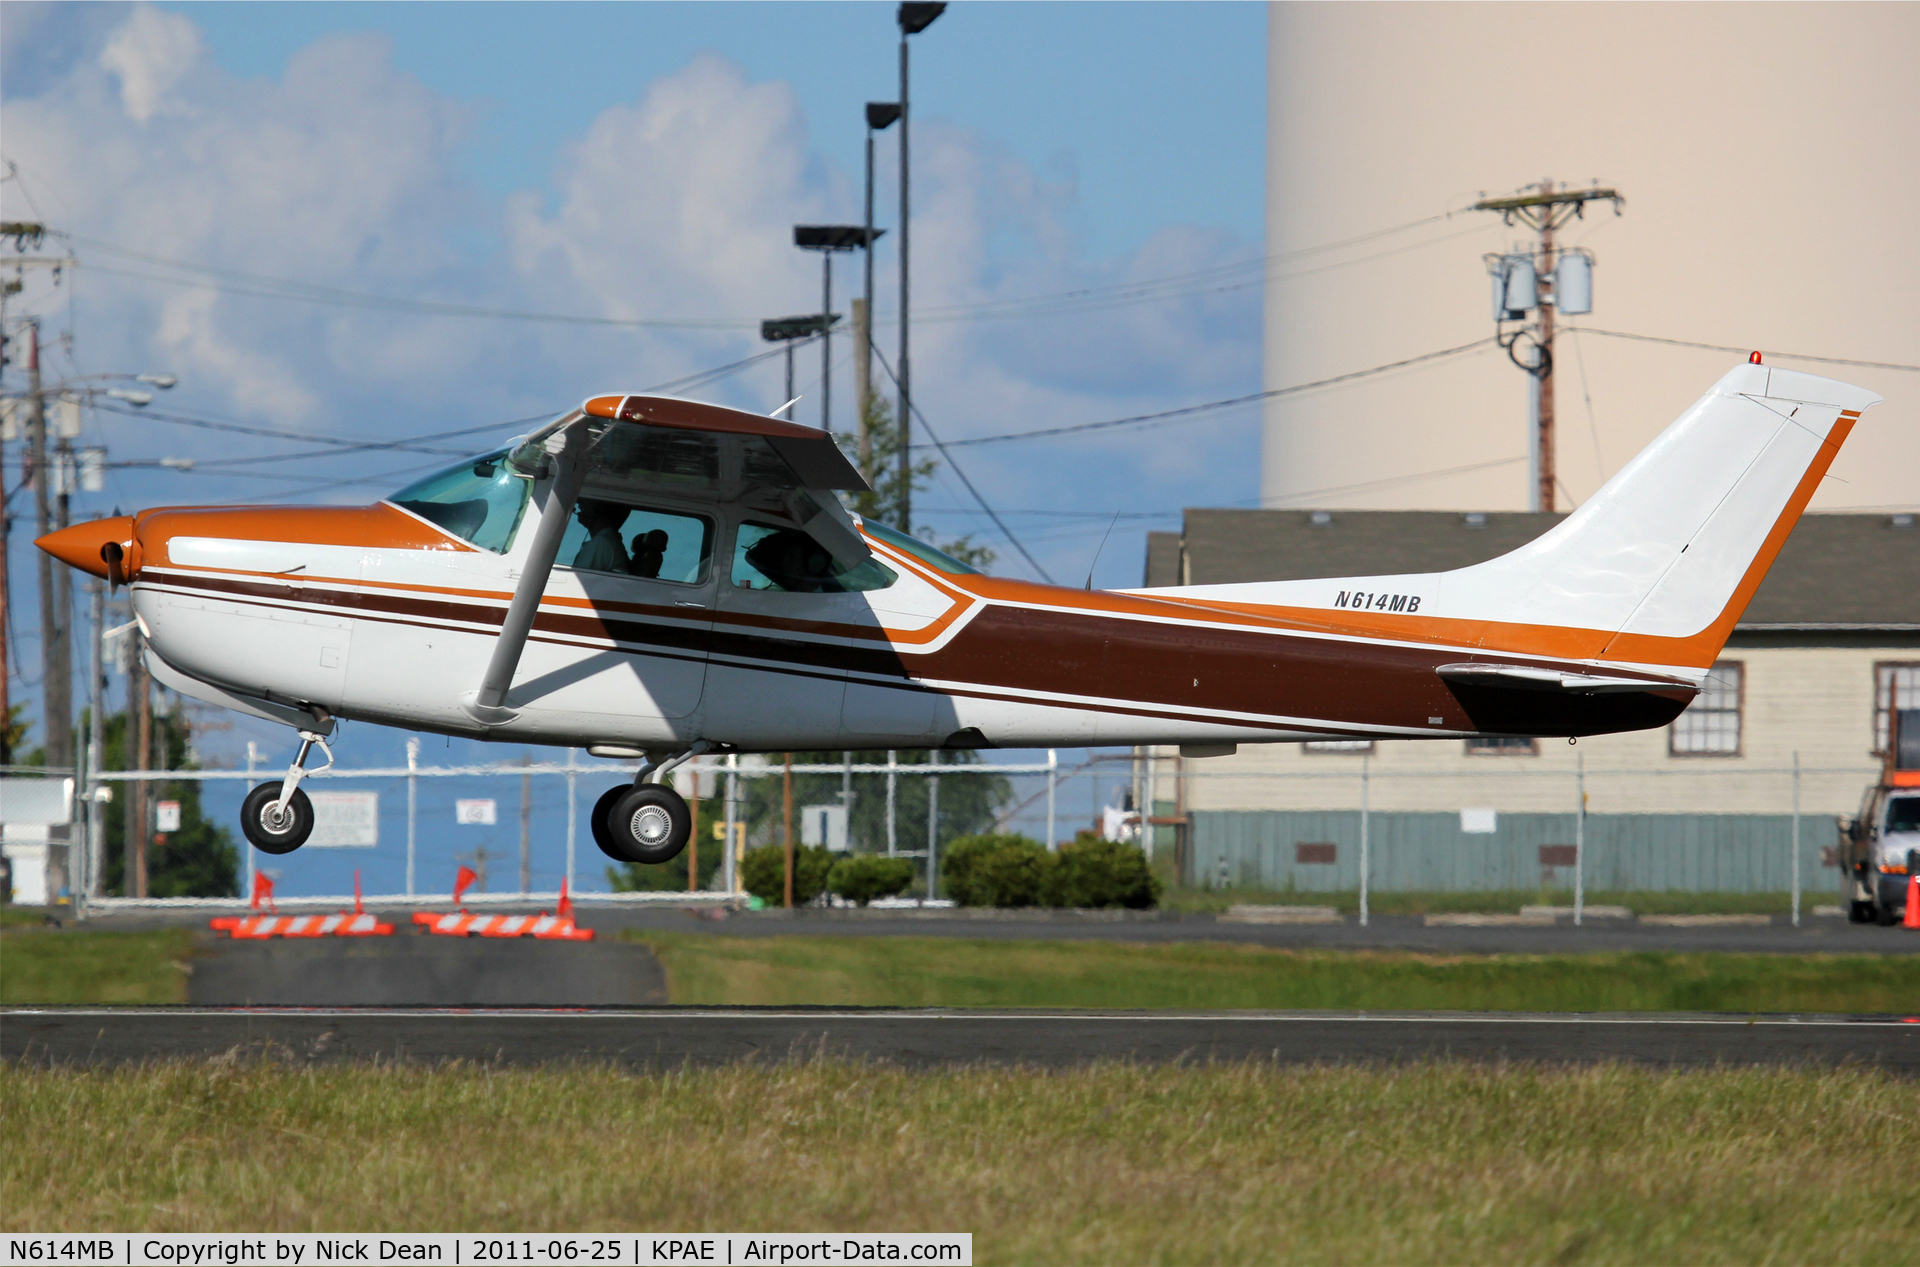 N614MB, 1978 Cessna R182 Skylane RG C/N R18200169, KPAE/PAE